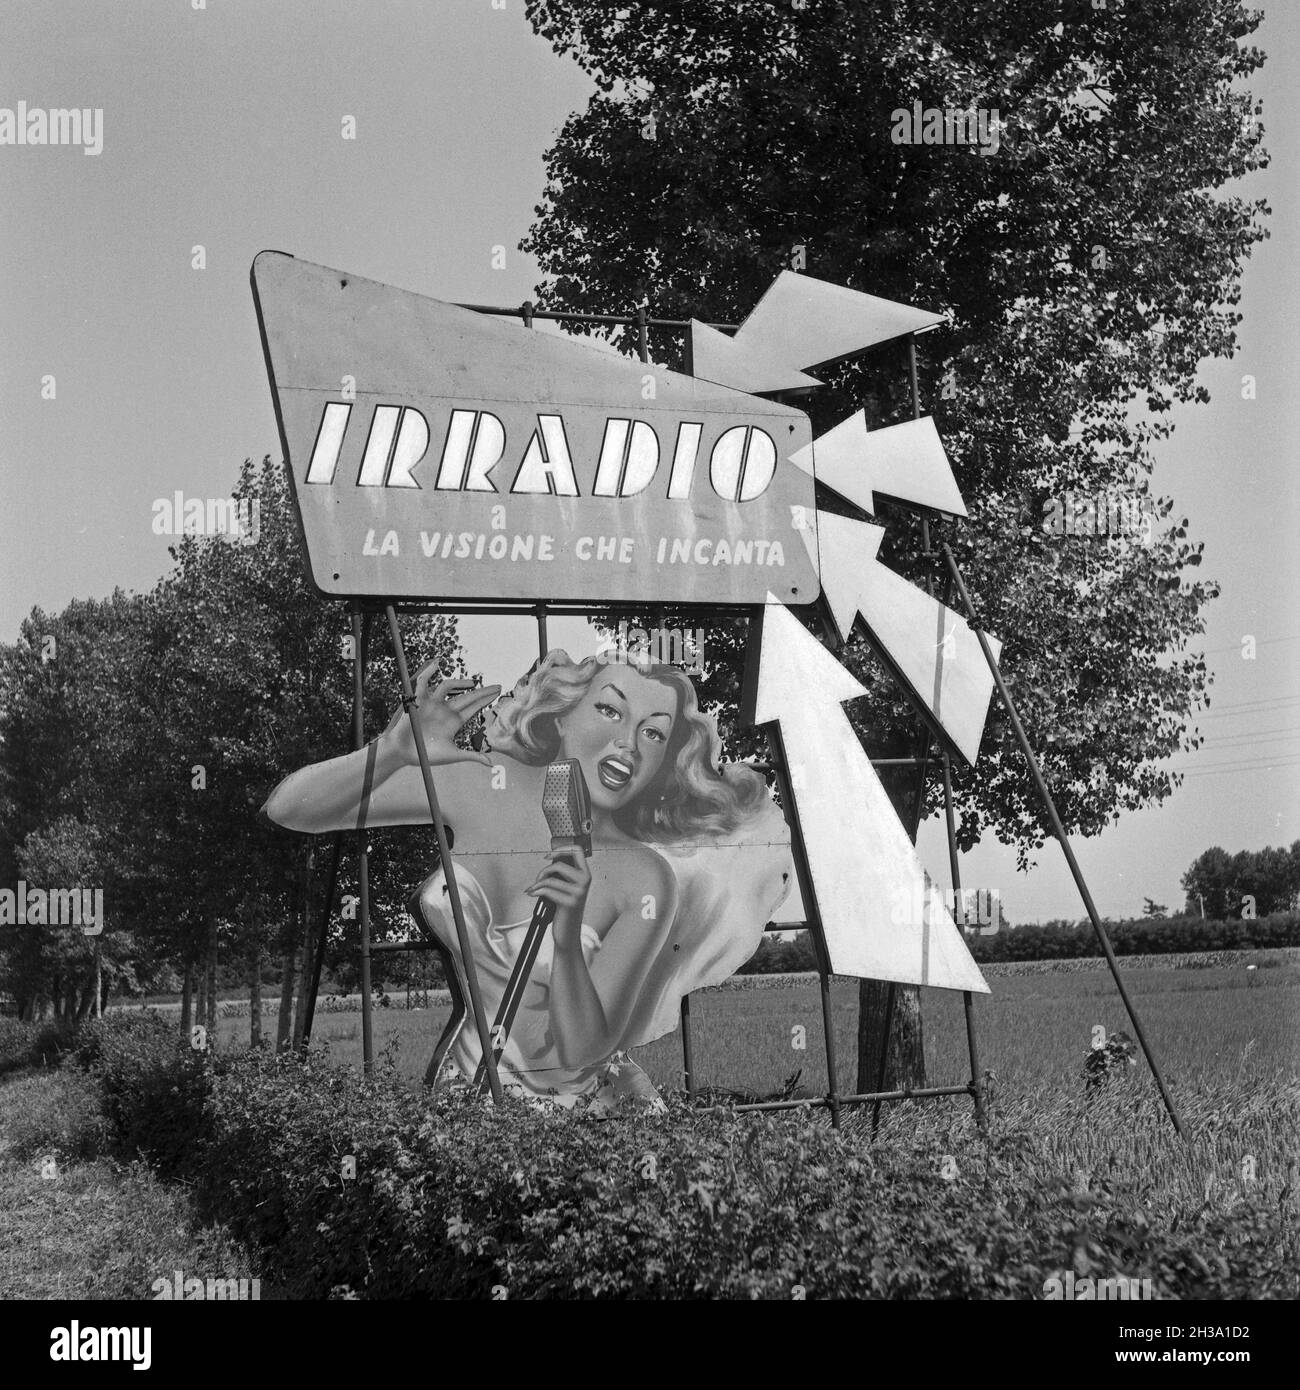 Werbeplakat für Irradio an der autostrade von Mailand nach Navarra, Italien 1950er Jahre. Mostra pubblicitaria Irradio all'autostrada tra Milano e Navarra, Italia anni '50. Foto Stock